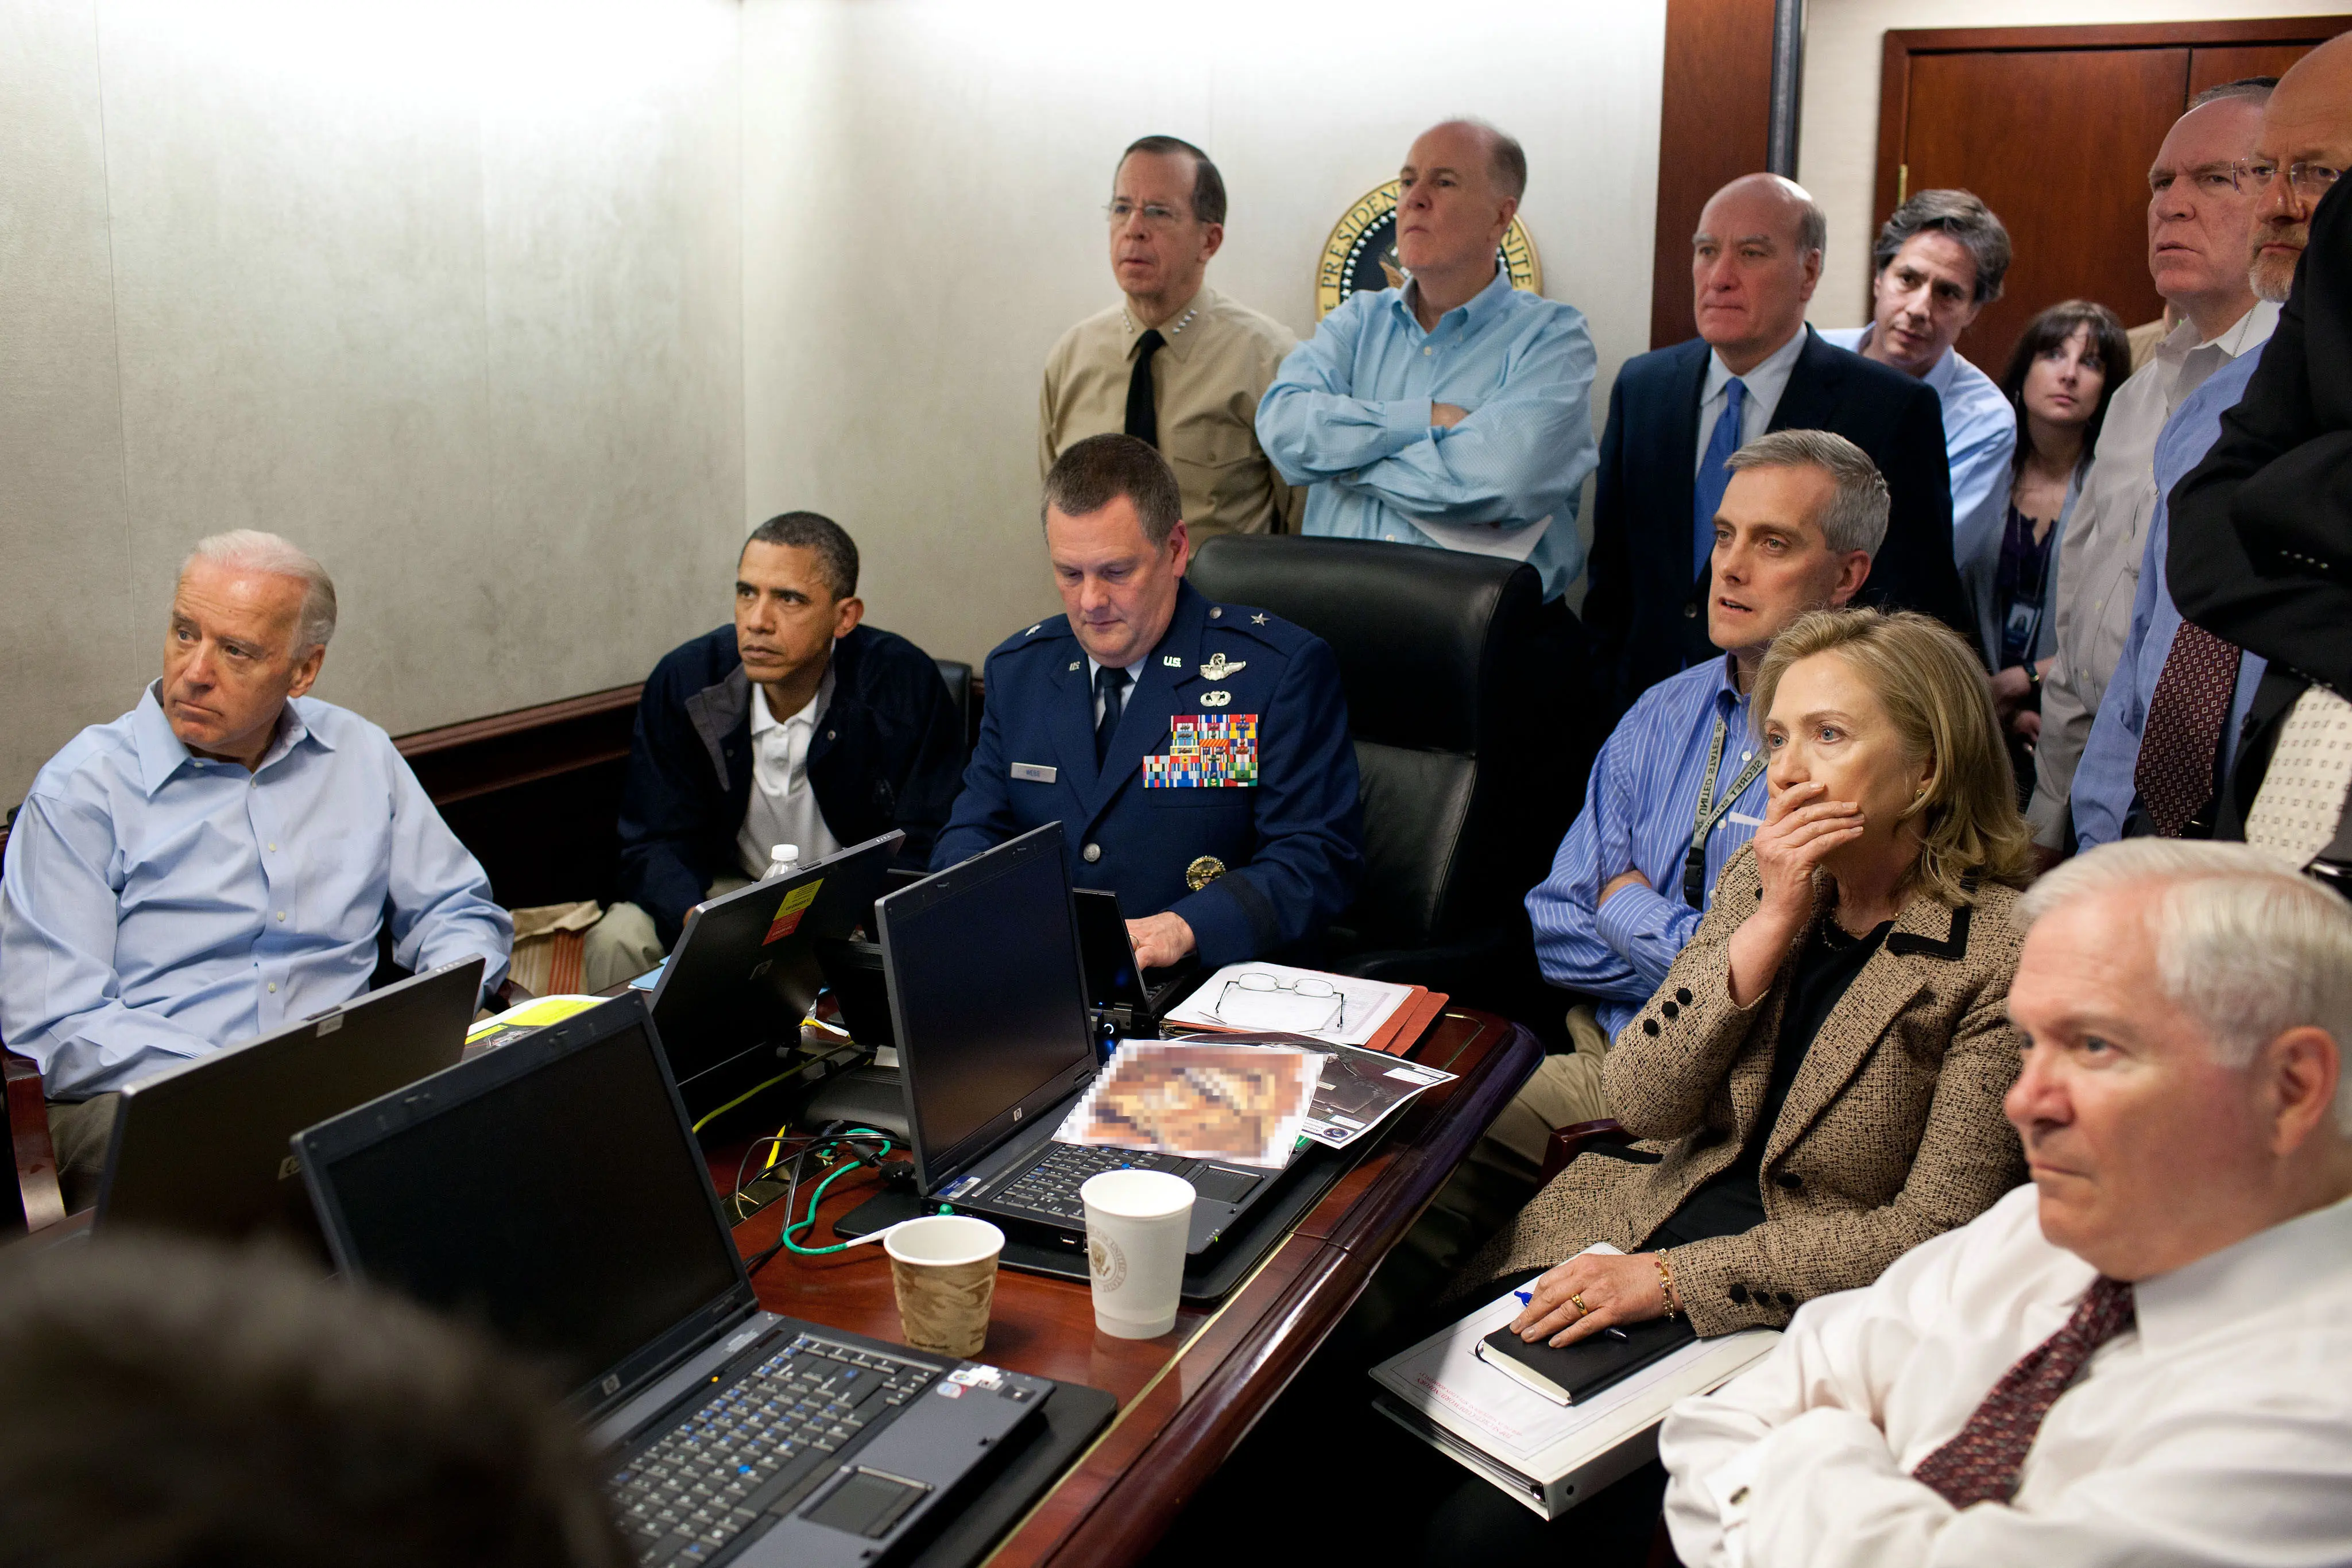 Situation Room, Gedung Putih, saat operasi pembunuhan Osama bin Laden, 2011 (Gedung Putih/Wikimedia Commons)